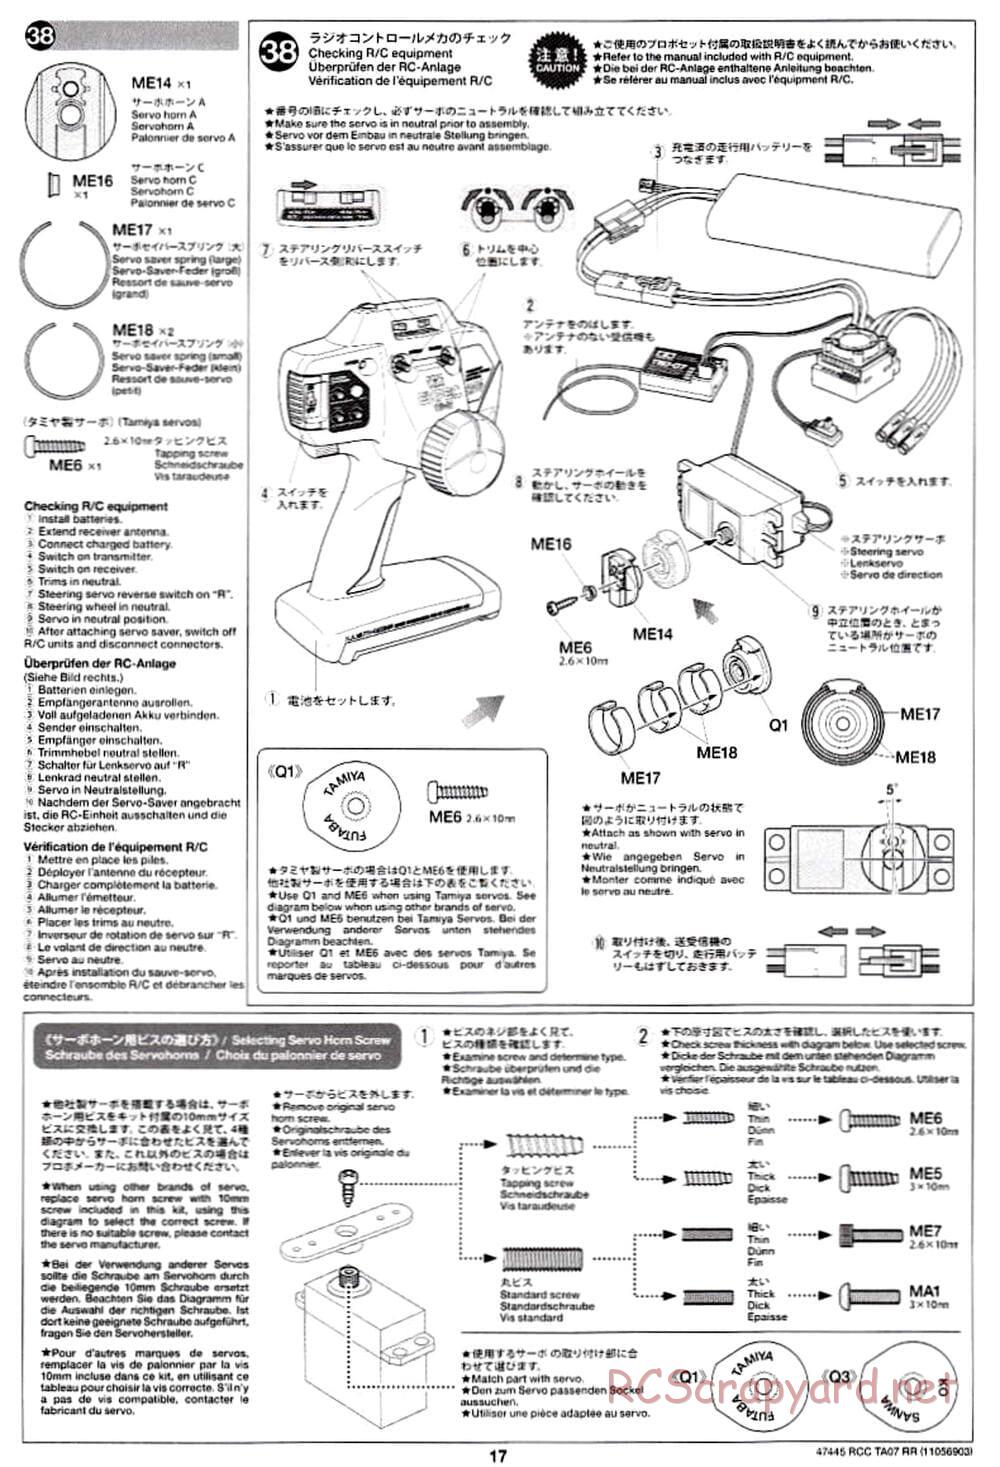 Tamiya - TA07 RR Chassis - Manual - Page 17